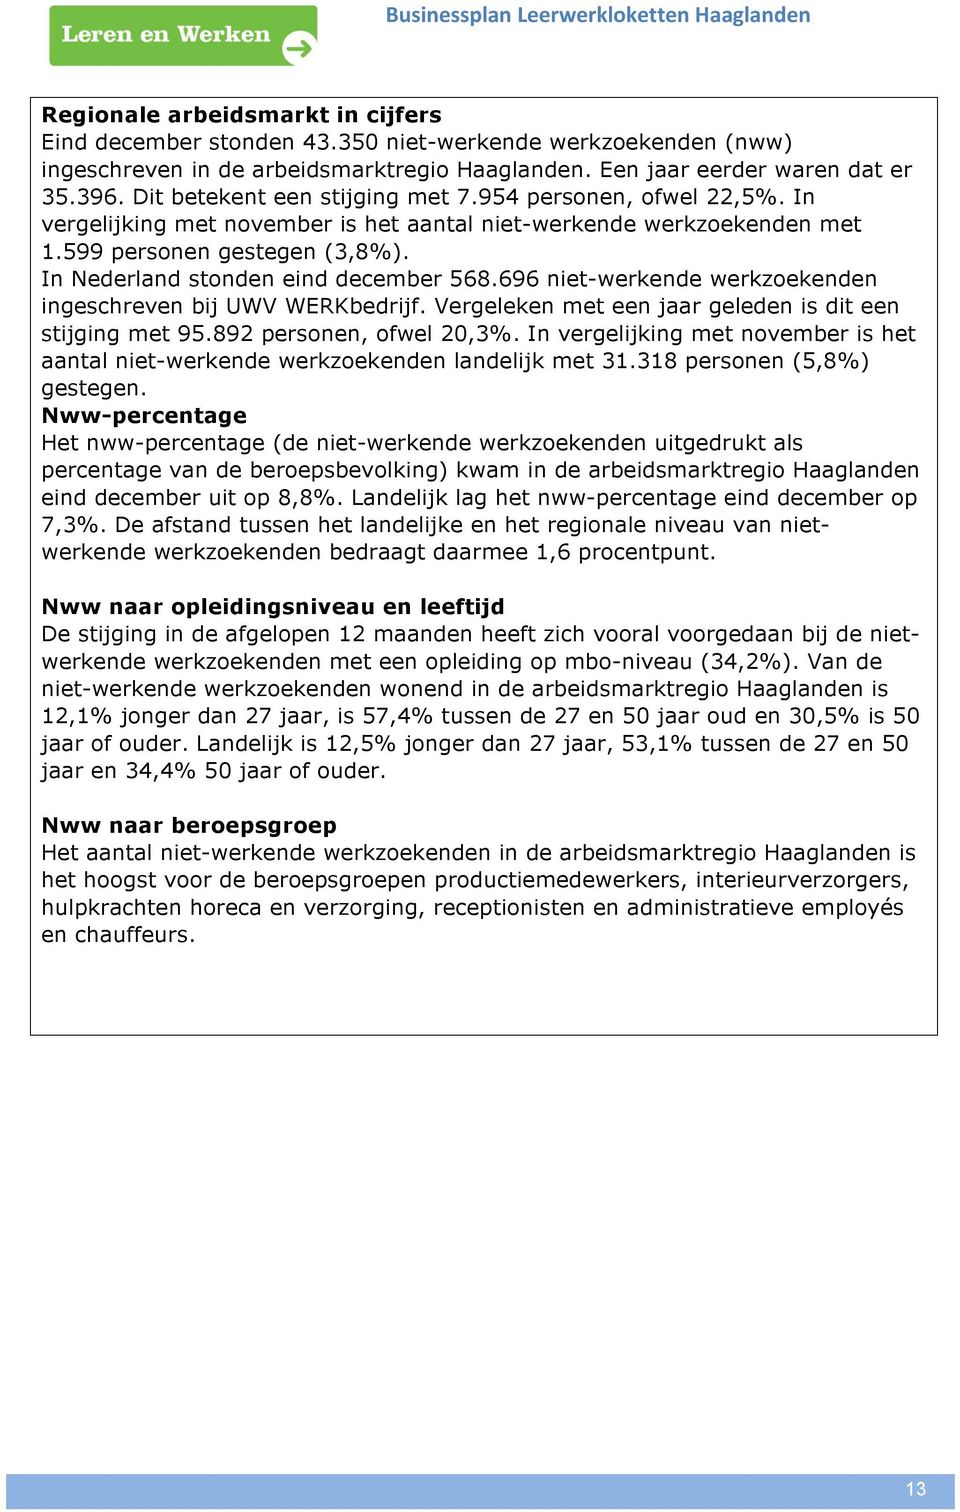 In Nederland stonden eind december 568.696 niet-werkende werkzoekenden ingeschreven bij UWV WERKbedrijf. Vergeleken met een jaar geleden is dit een stijging met 95.892 personen, ofwel 20,3%.